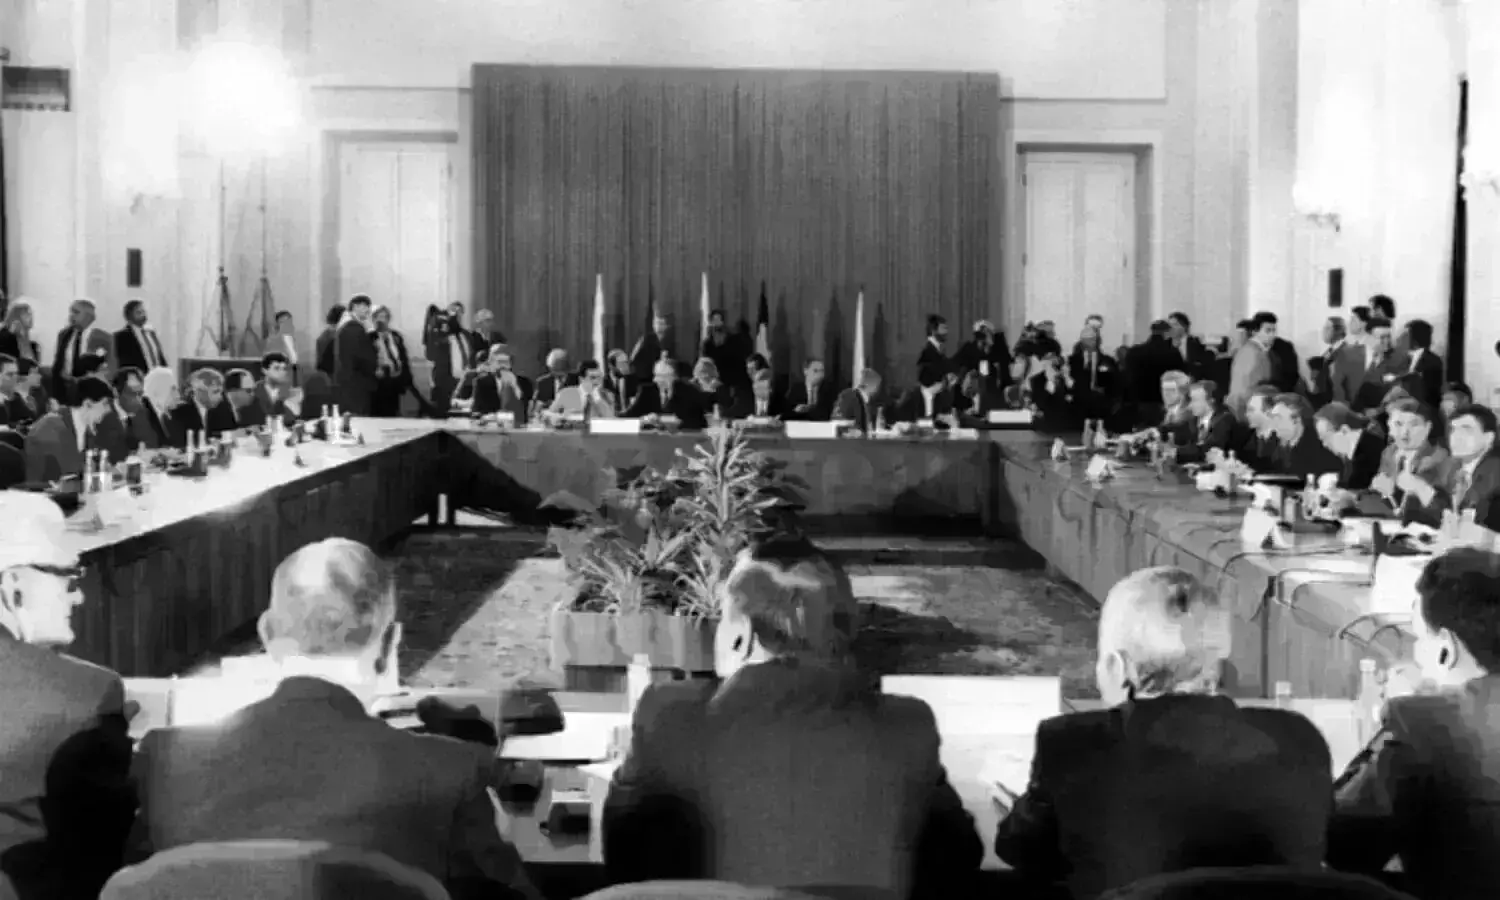 Warsaw Pact: नाटो के जवाब में बनी थी वारसा संधि, इस तरह अस्तित्वहीन हो गया संगठन